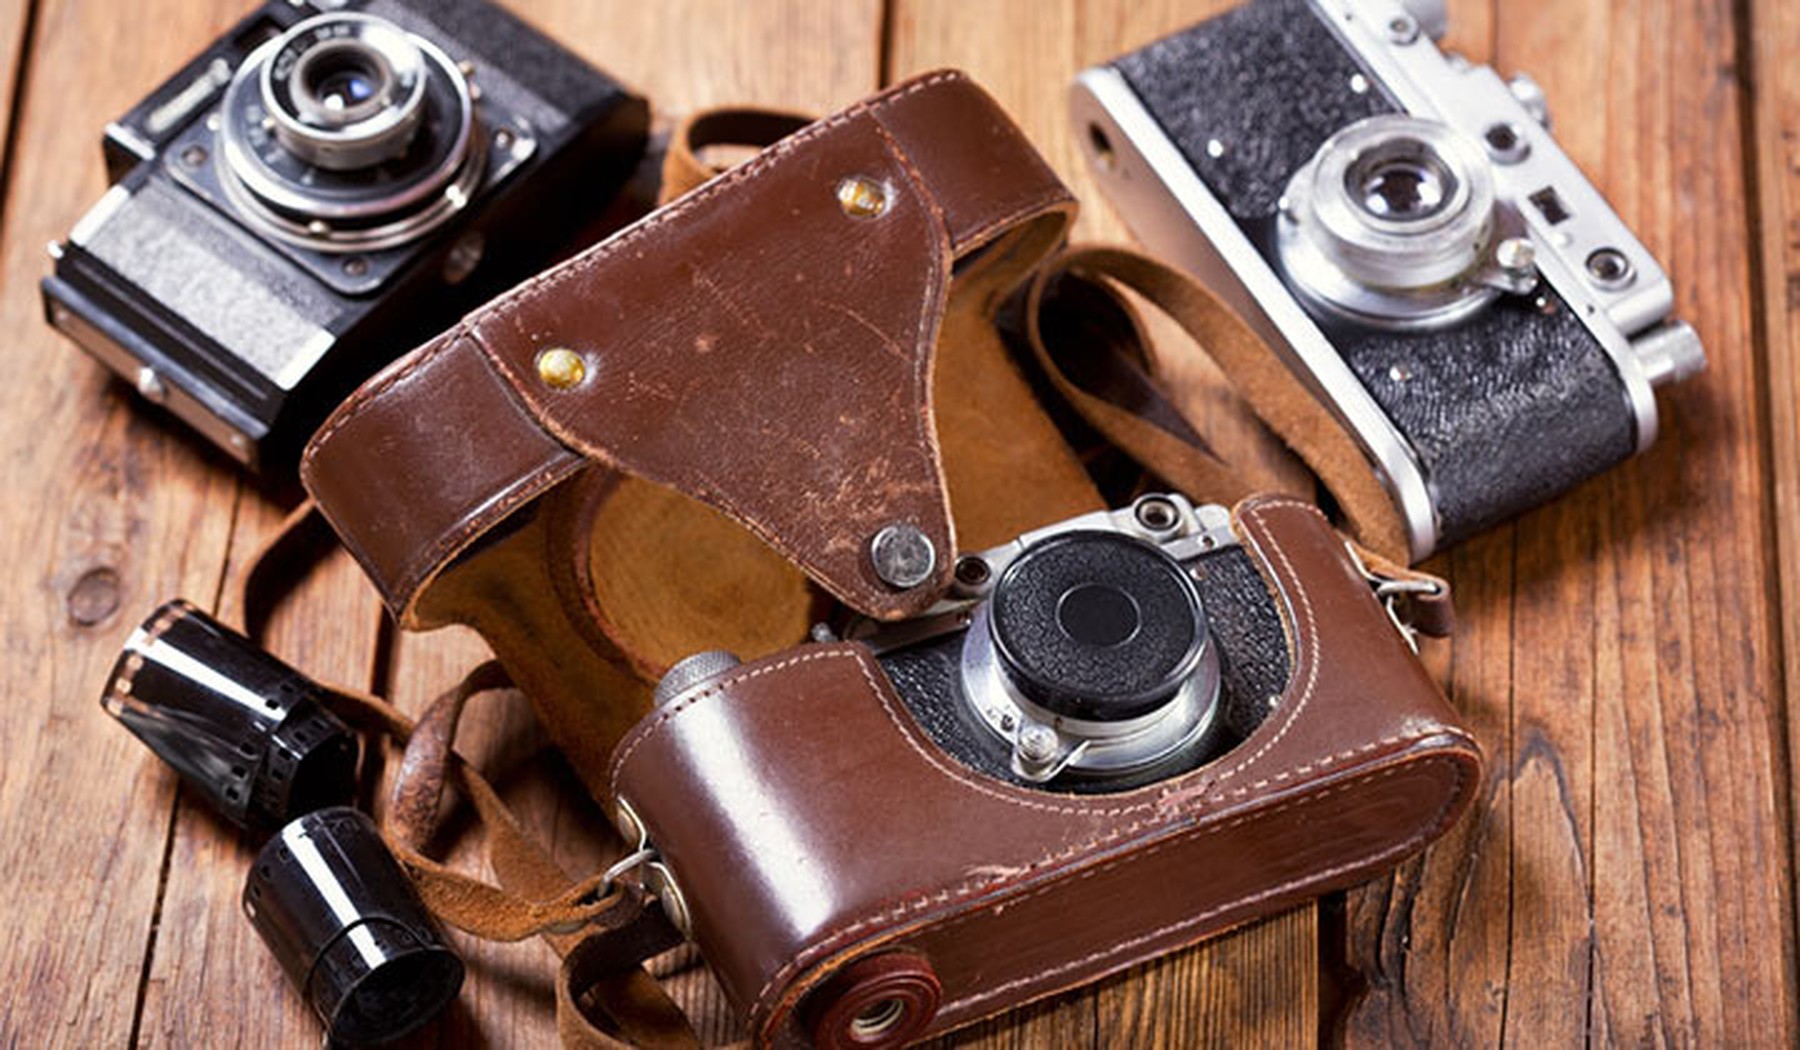 3 cámaras de fotos vintage encima de una mesa de madera. La que está en primer plano tiene una funda marrón de cuero abierta. También hay unos rollos de carrete